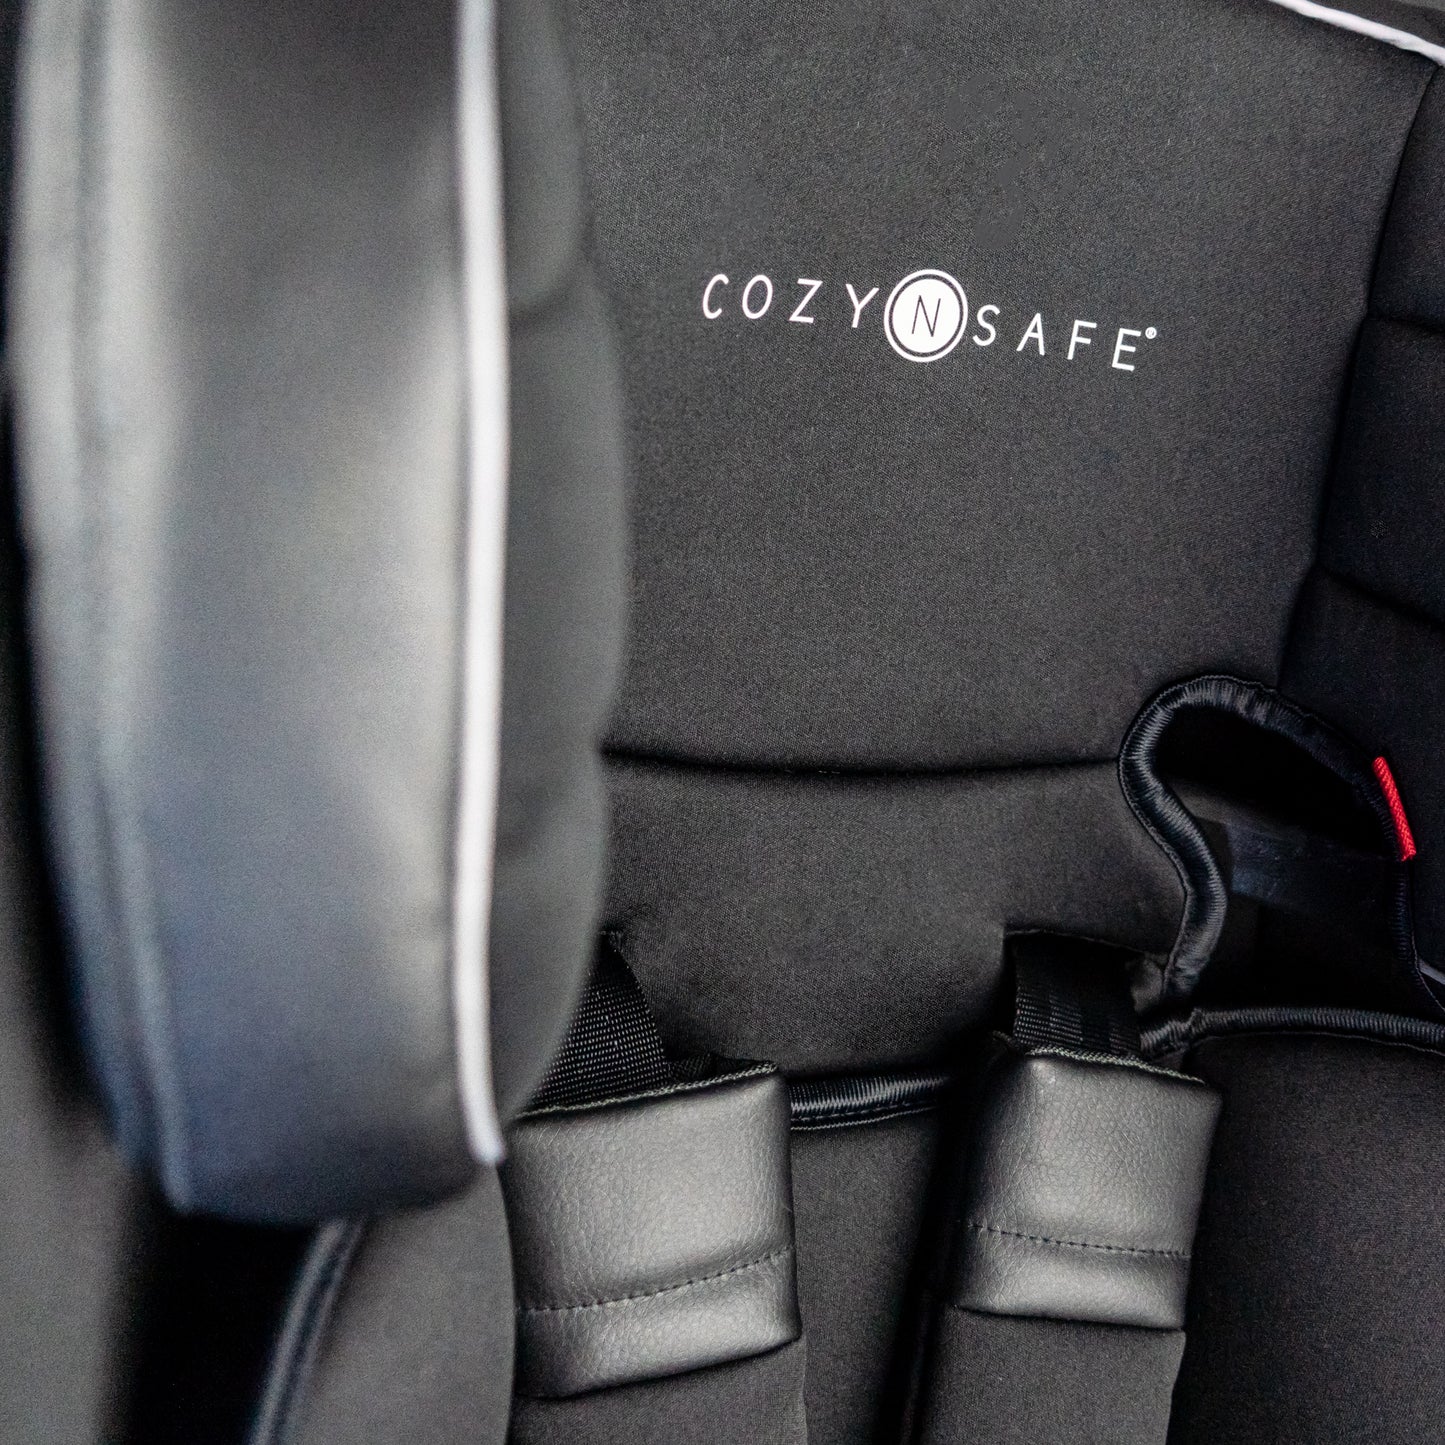 Cozy N Safe Hudson Group 1/2/3 25kg Harness Car Seat